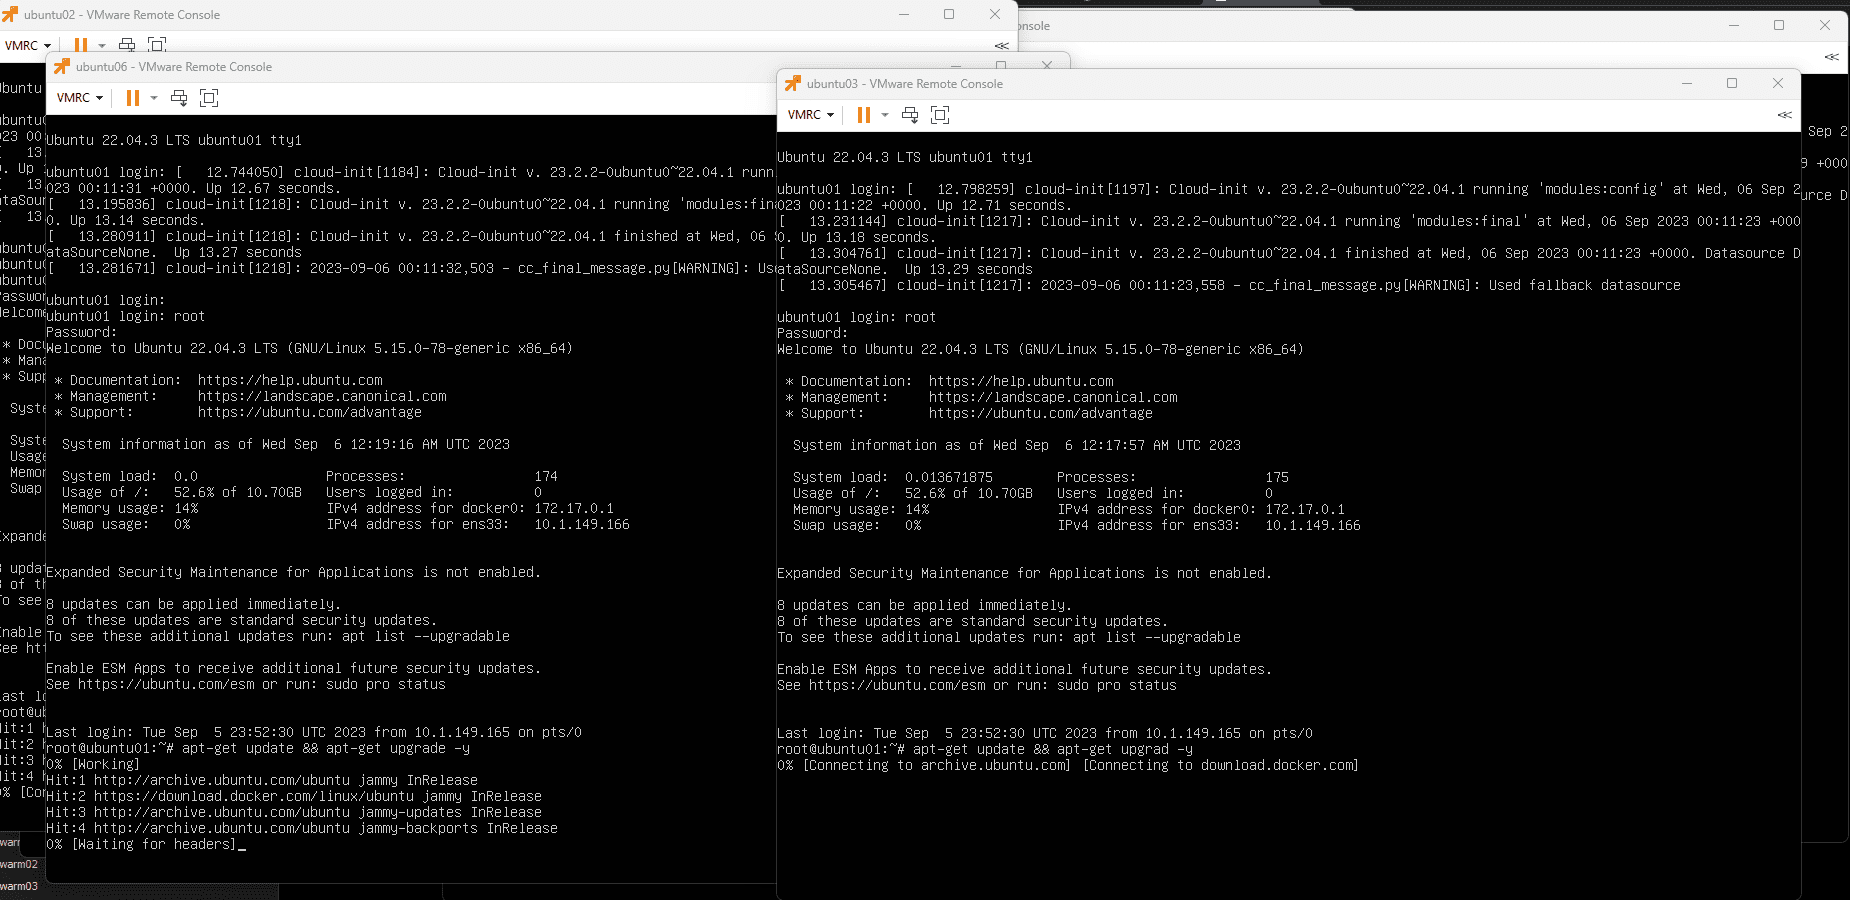 Running ubuntu server updates at the same time